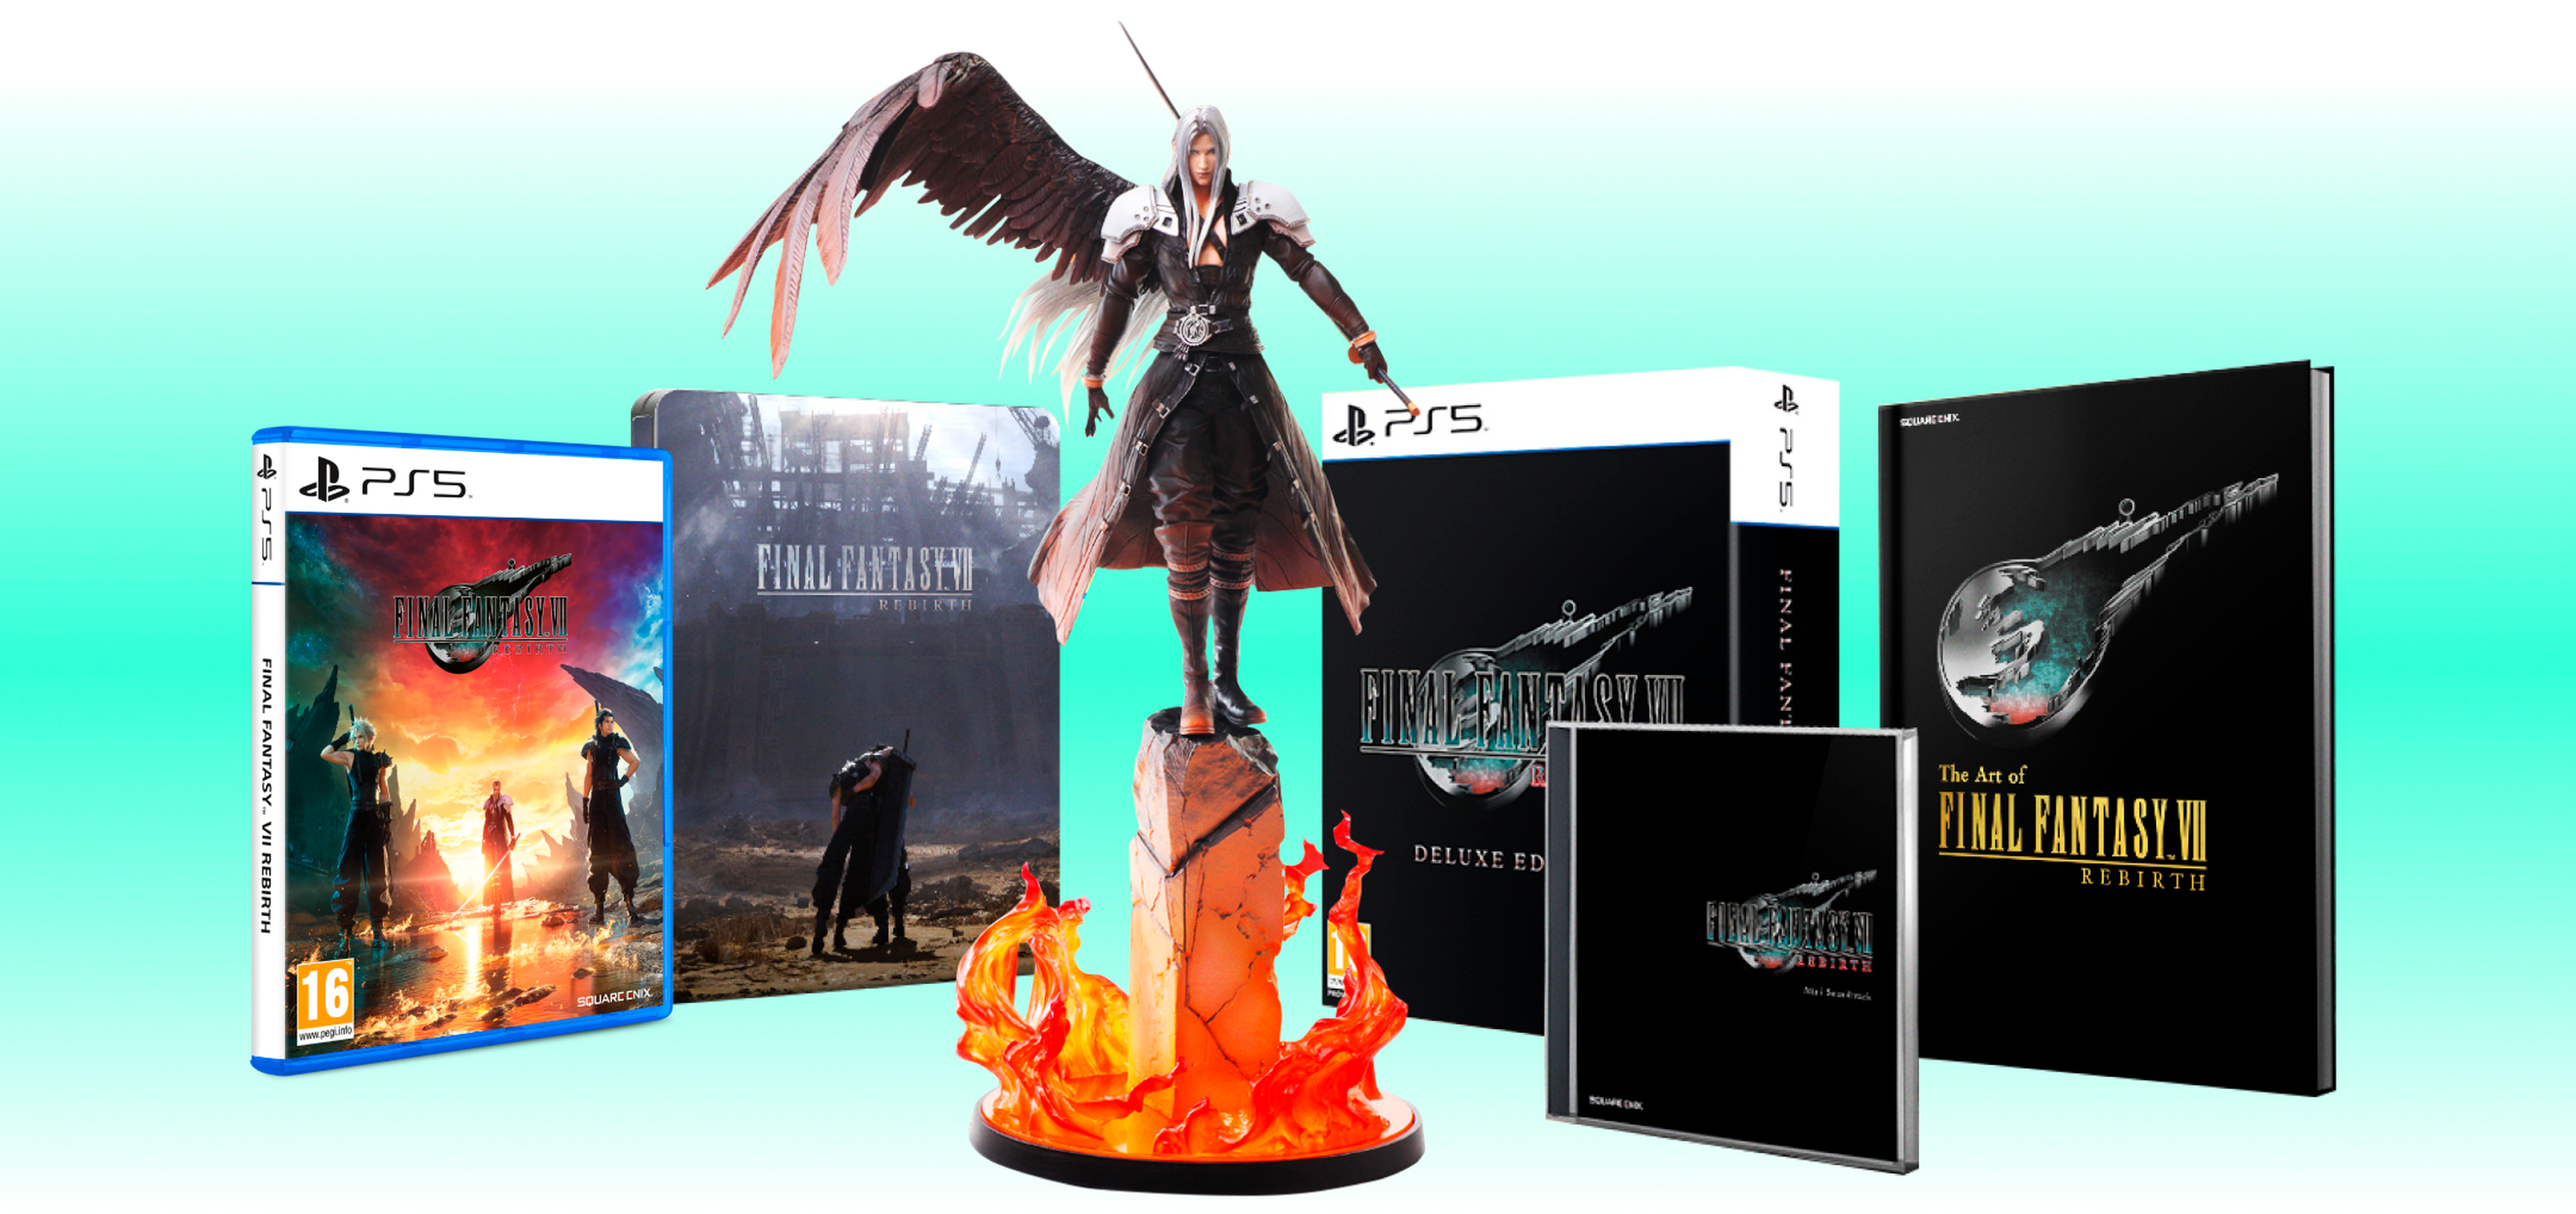 Final Fantasy VII Rebirth - Ediciones